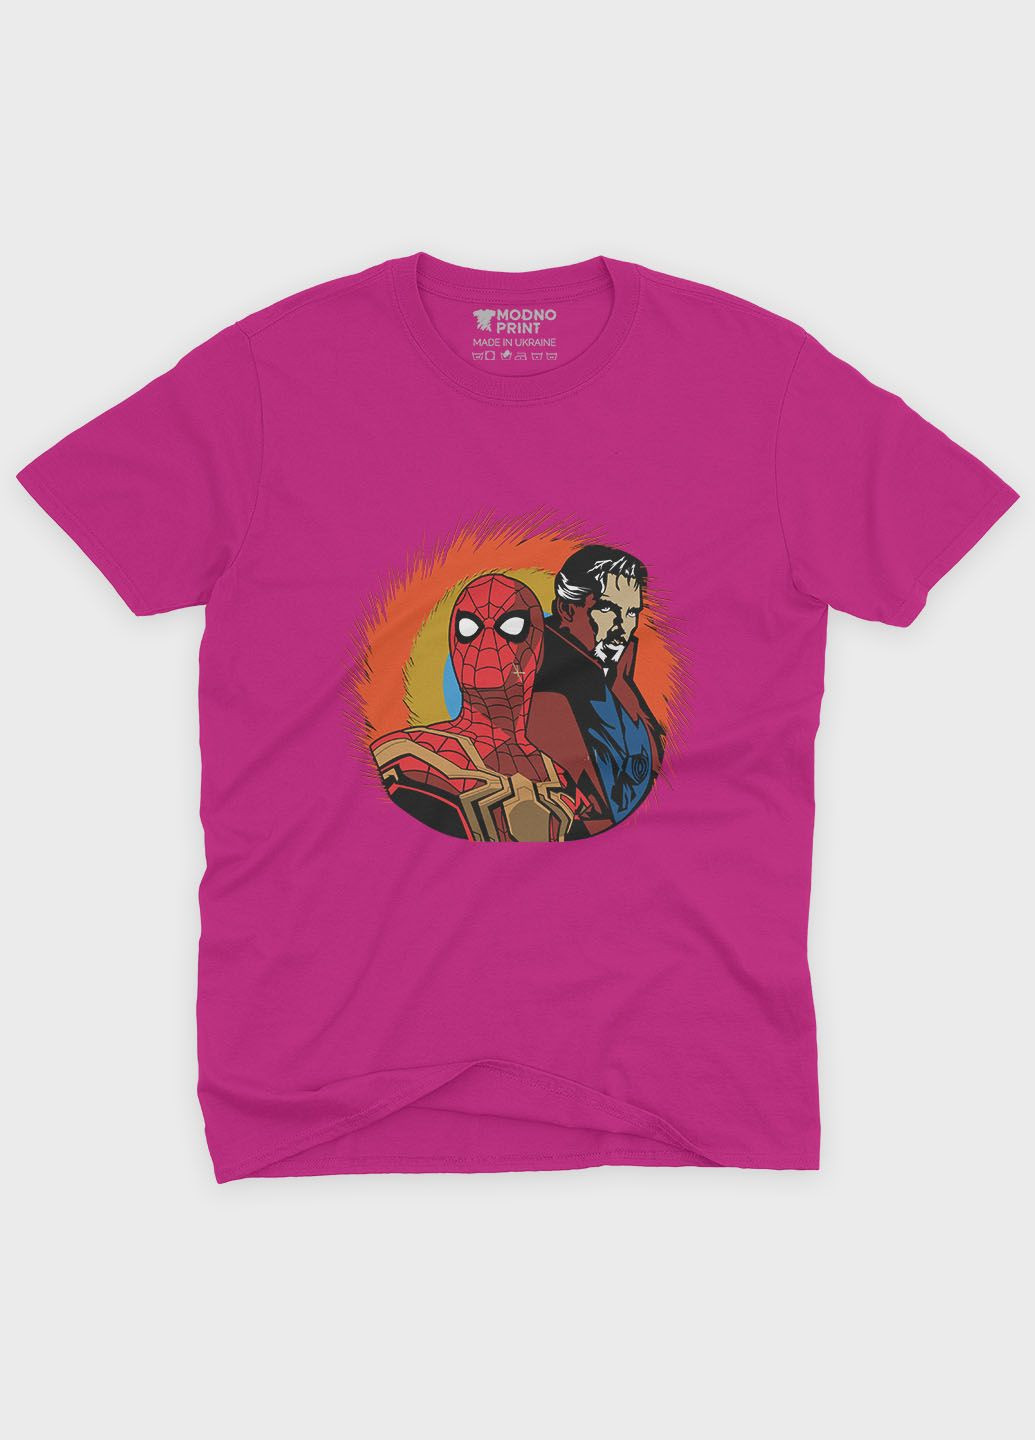 Розовая демисезонная футболка для девочки с принтом супергероя - человек-паук (ts001-1-fuxj-006-014-006-g) Modno